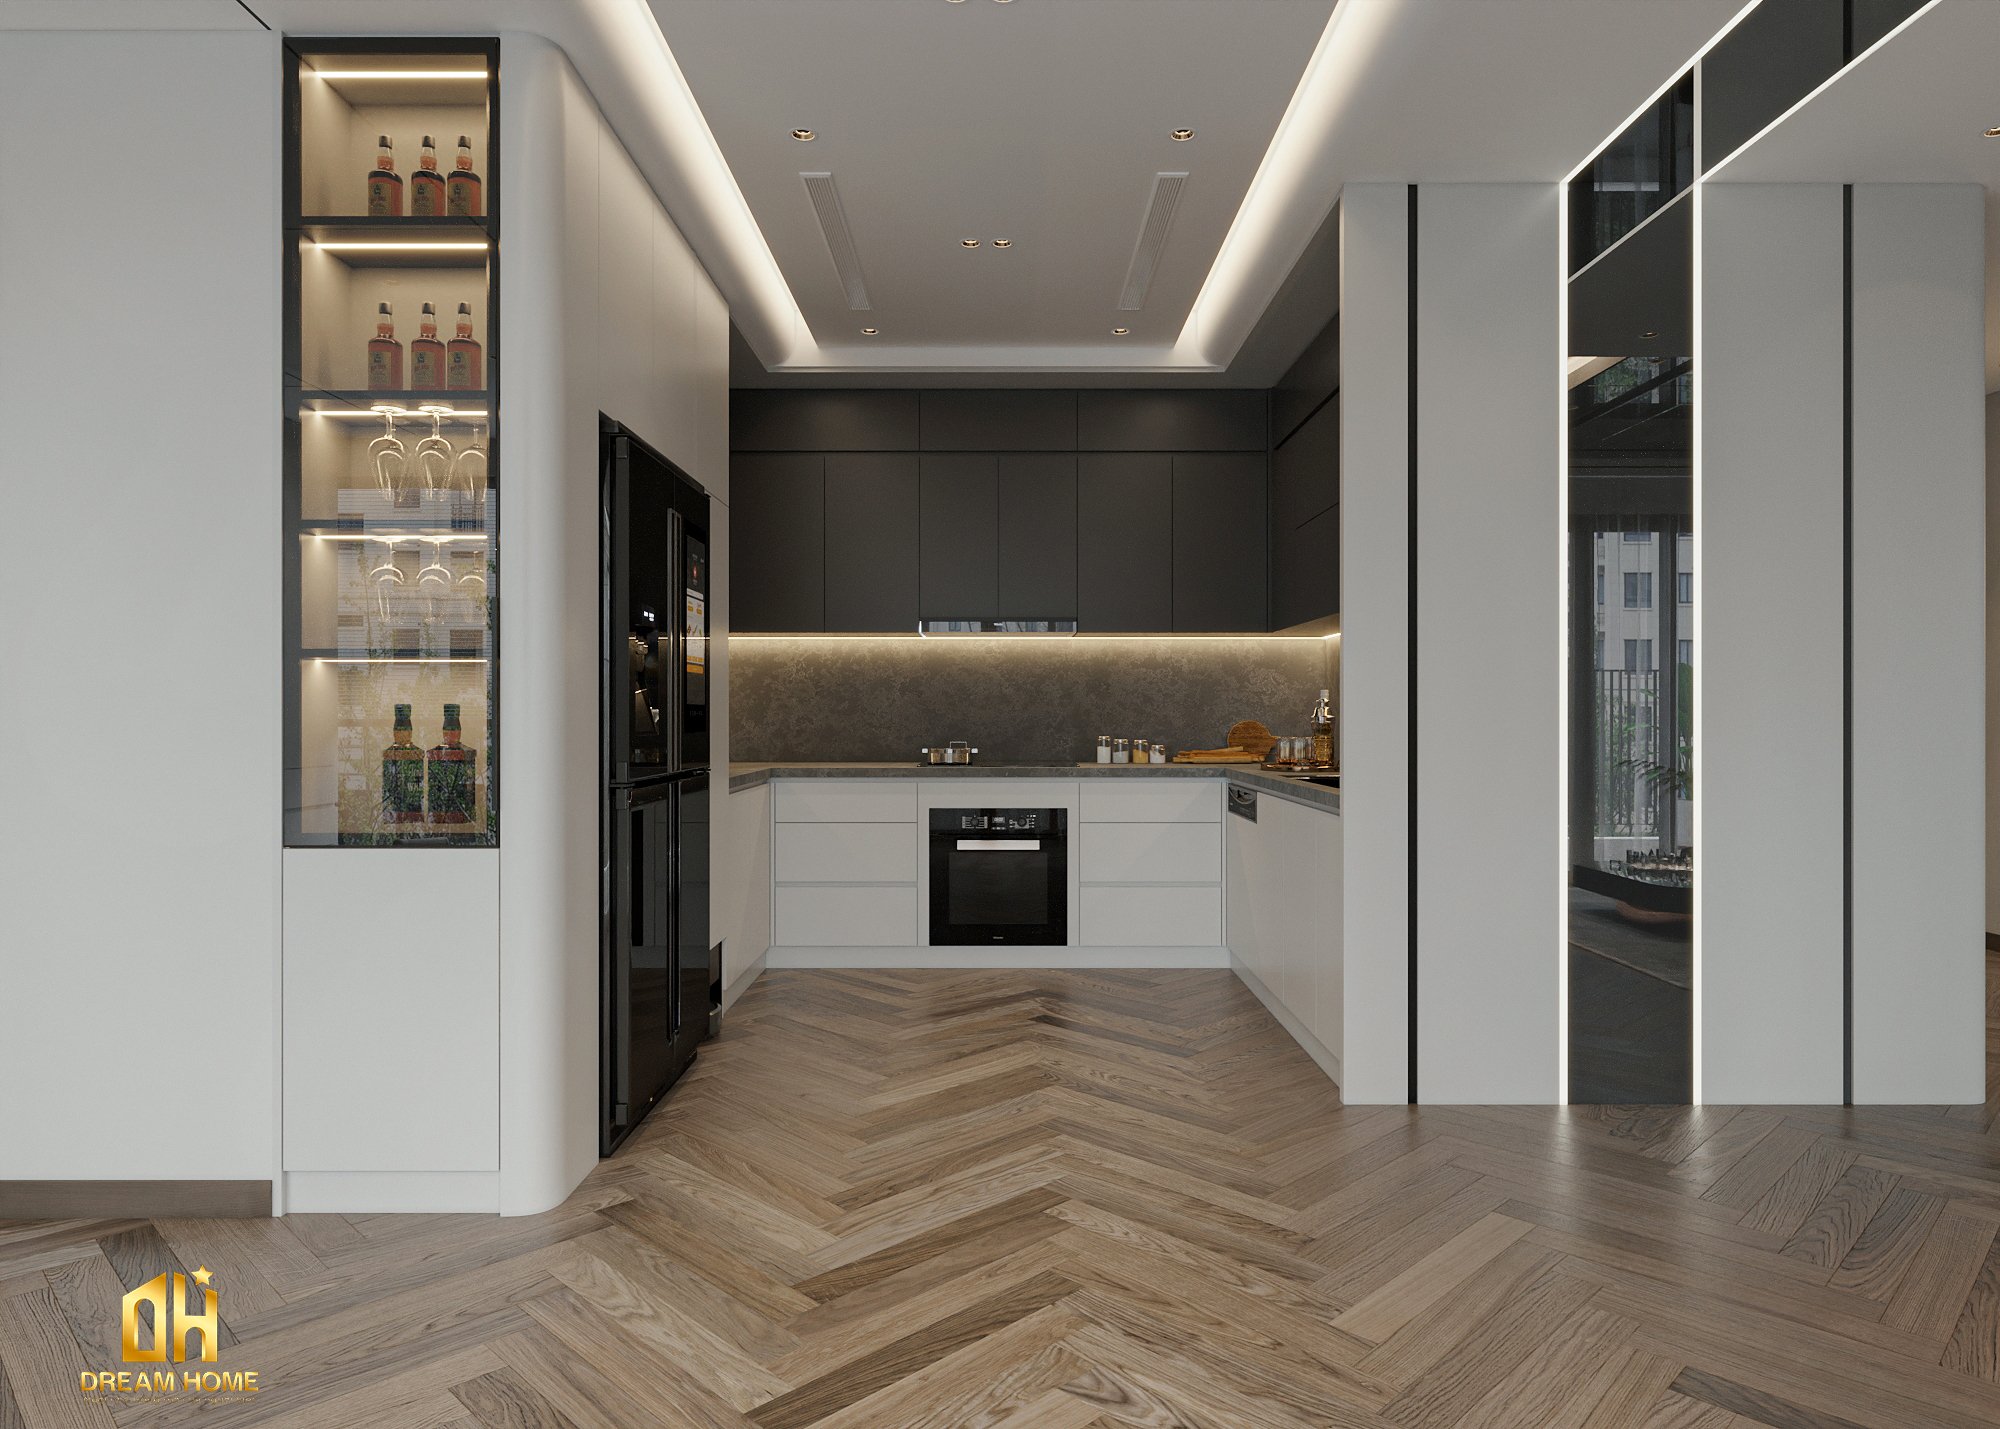 Sự kết hợp màu sắc trong tủ bếp này tạo ra một không gian vừa ấm áp vừa hiện đại.